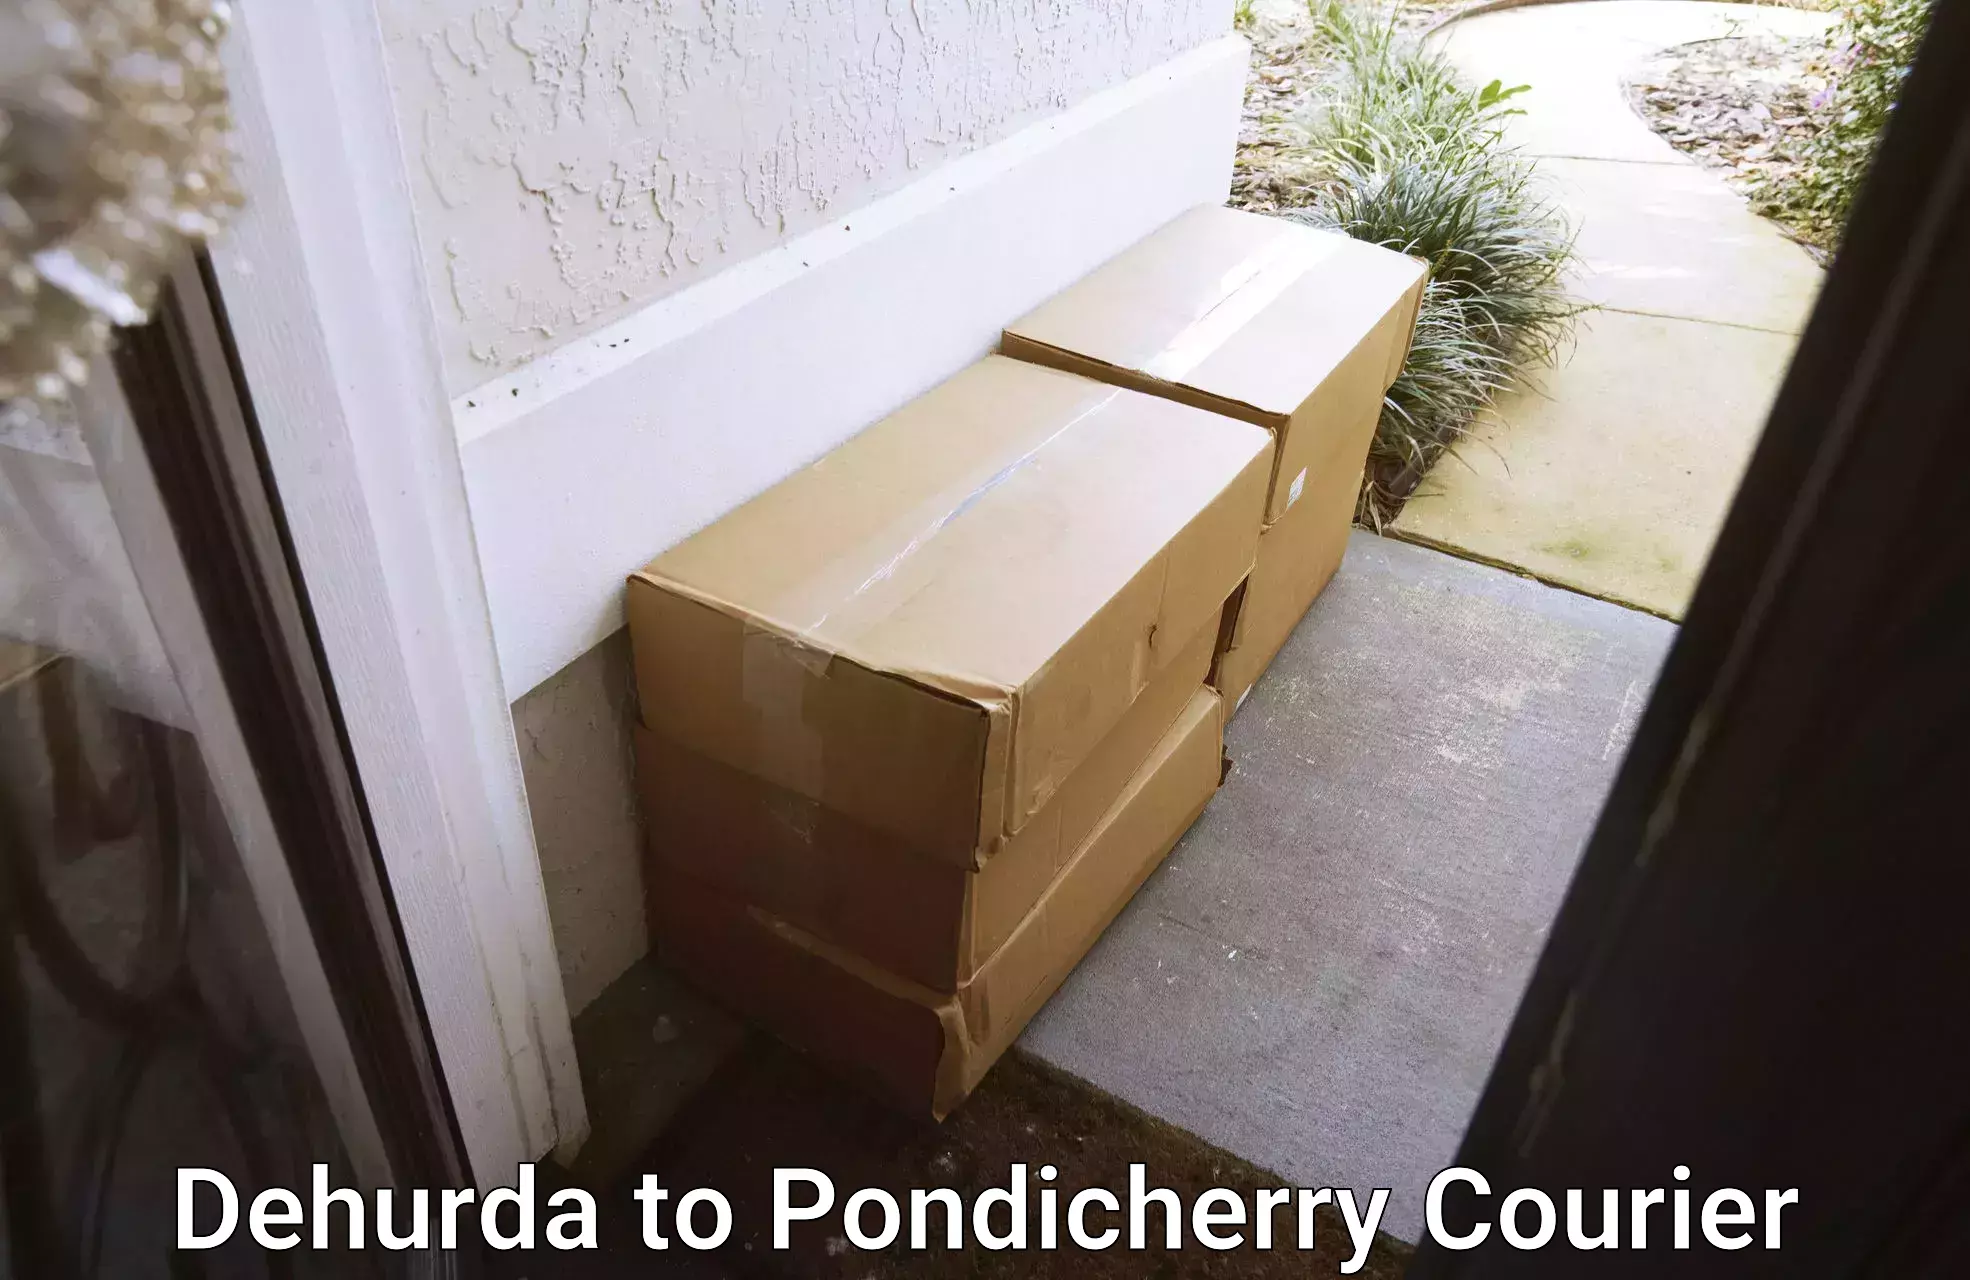 Supply chain delivery Dehurda to Pondicherry University